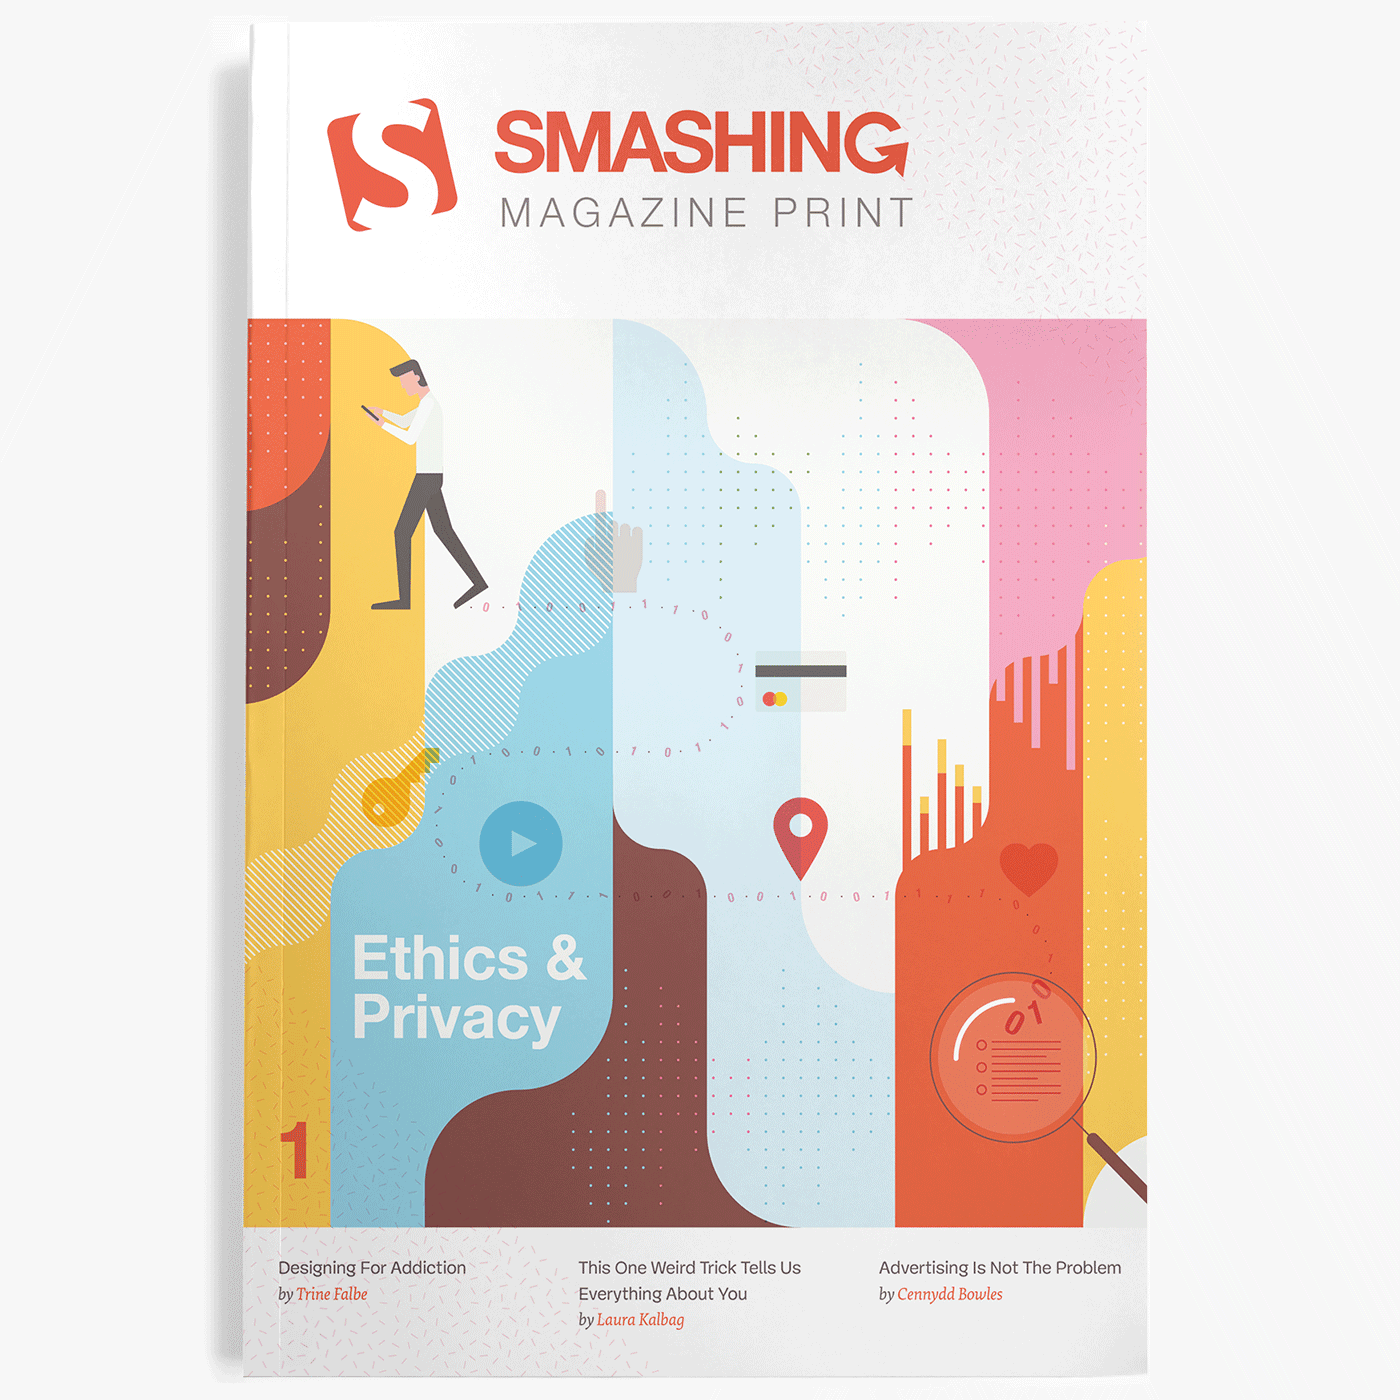 Smashing Magazine Print magazine mockup